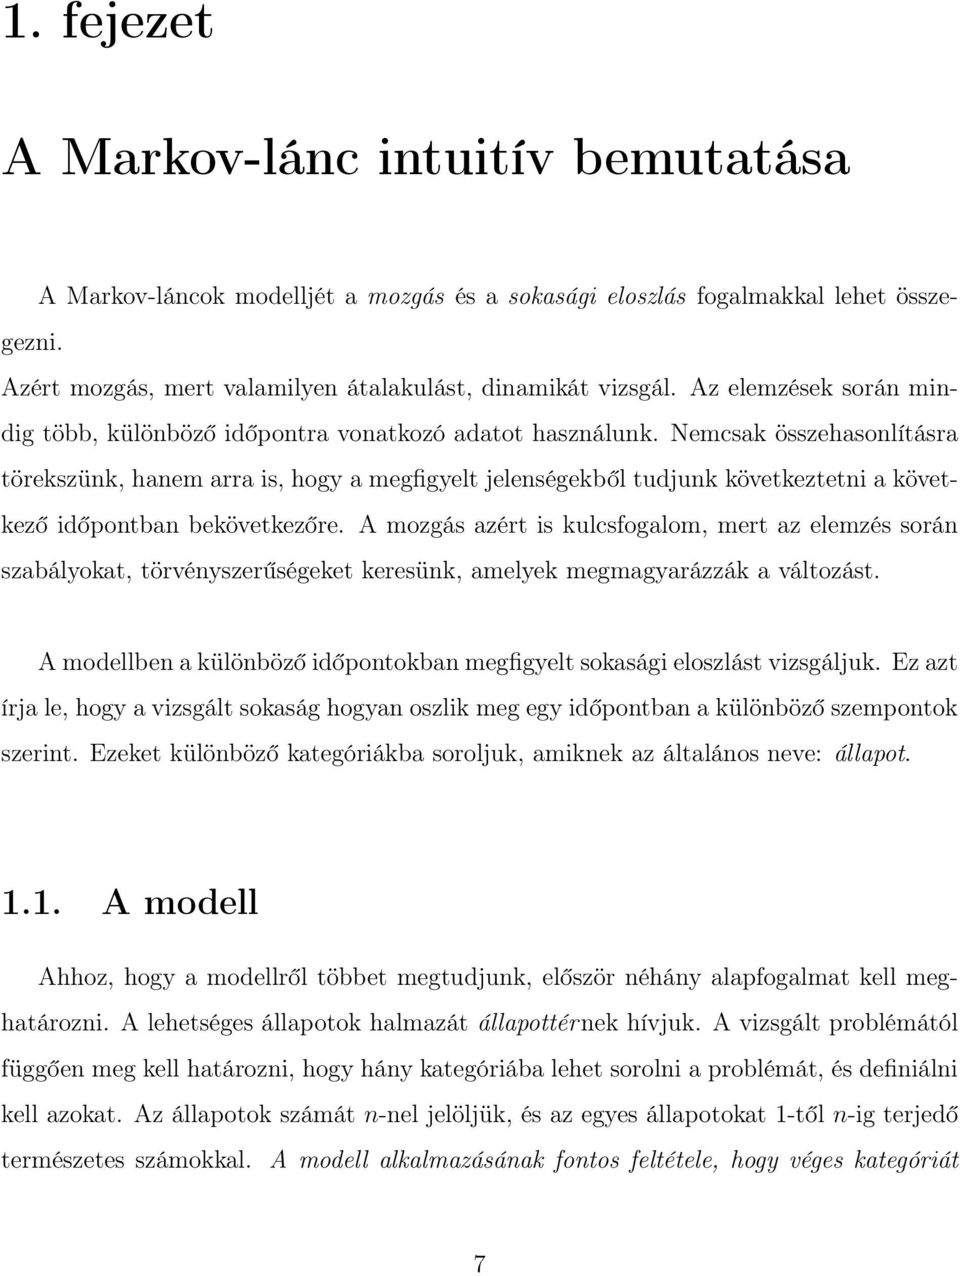 Sztochasztikus mátrixok és Markov-láncok - PDF Free Download